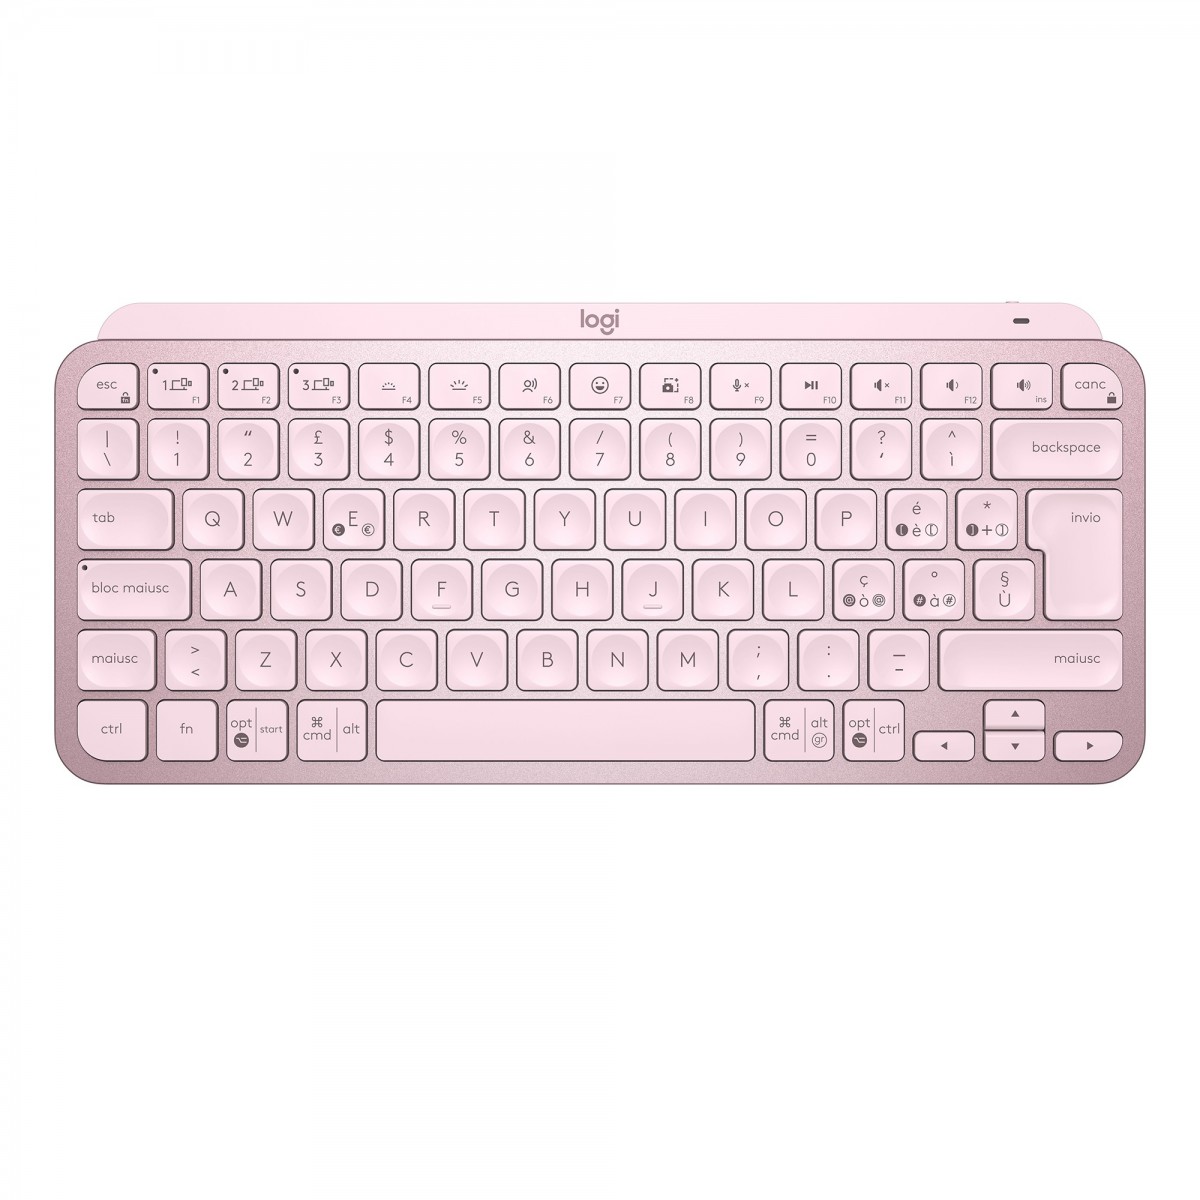 Logitech MX 920-010812 - Keyboard